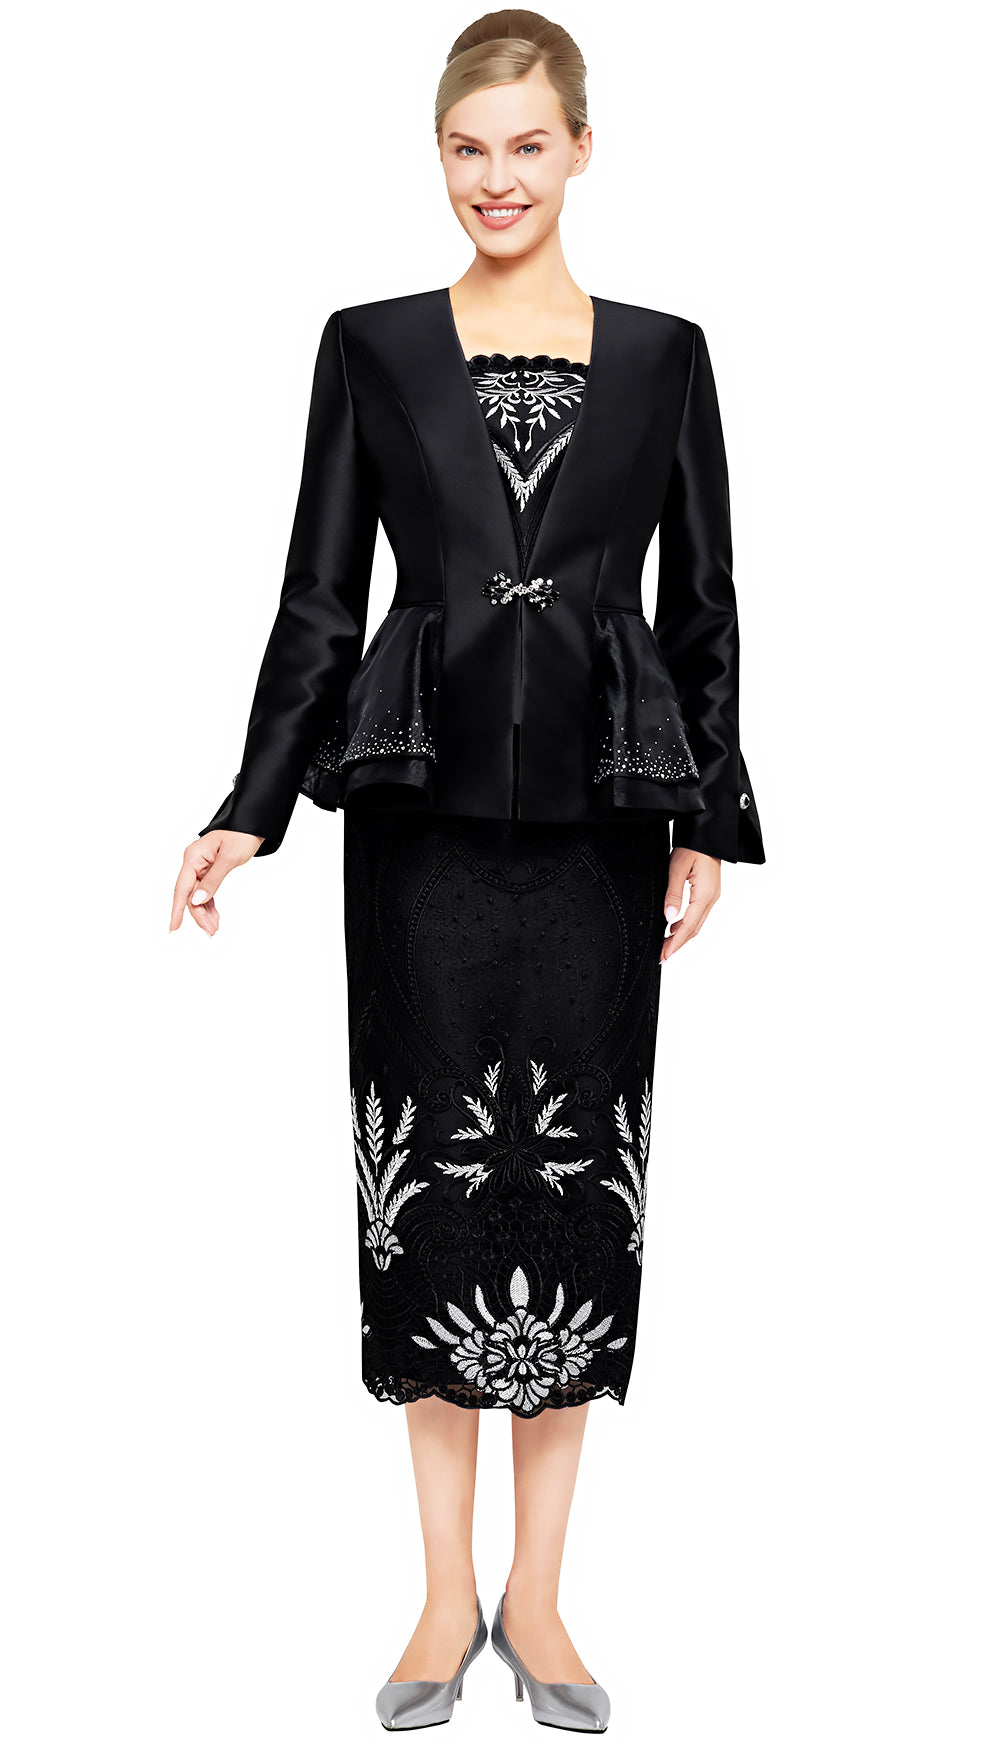 Nina Massini Church Suit 3092-Royal Black/White - Church Suits For Less